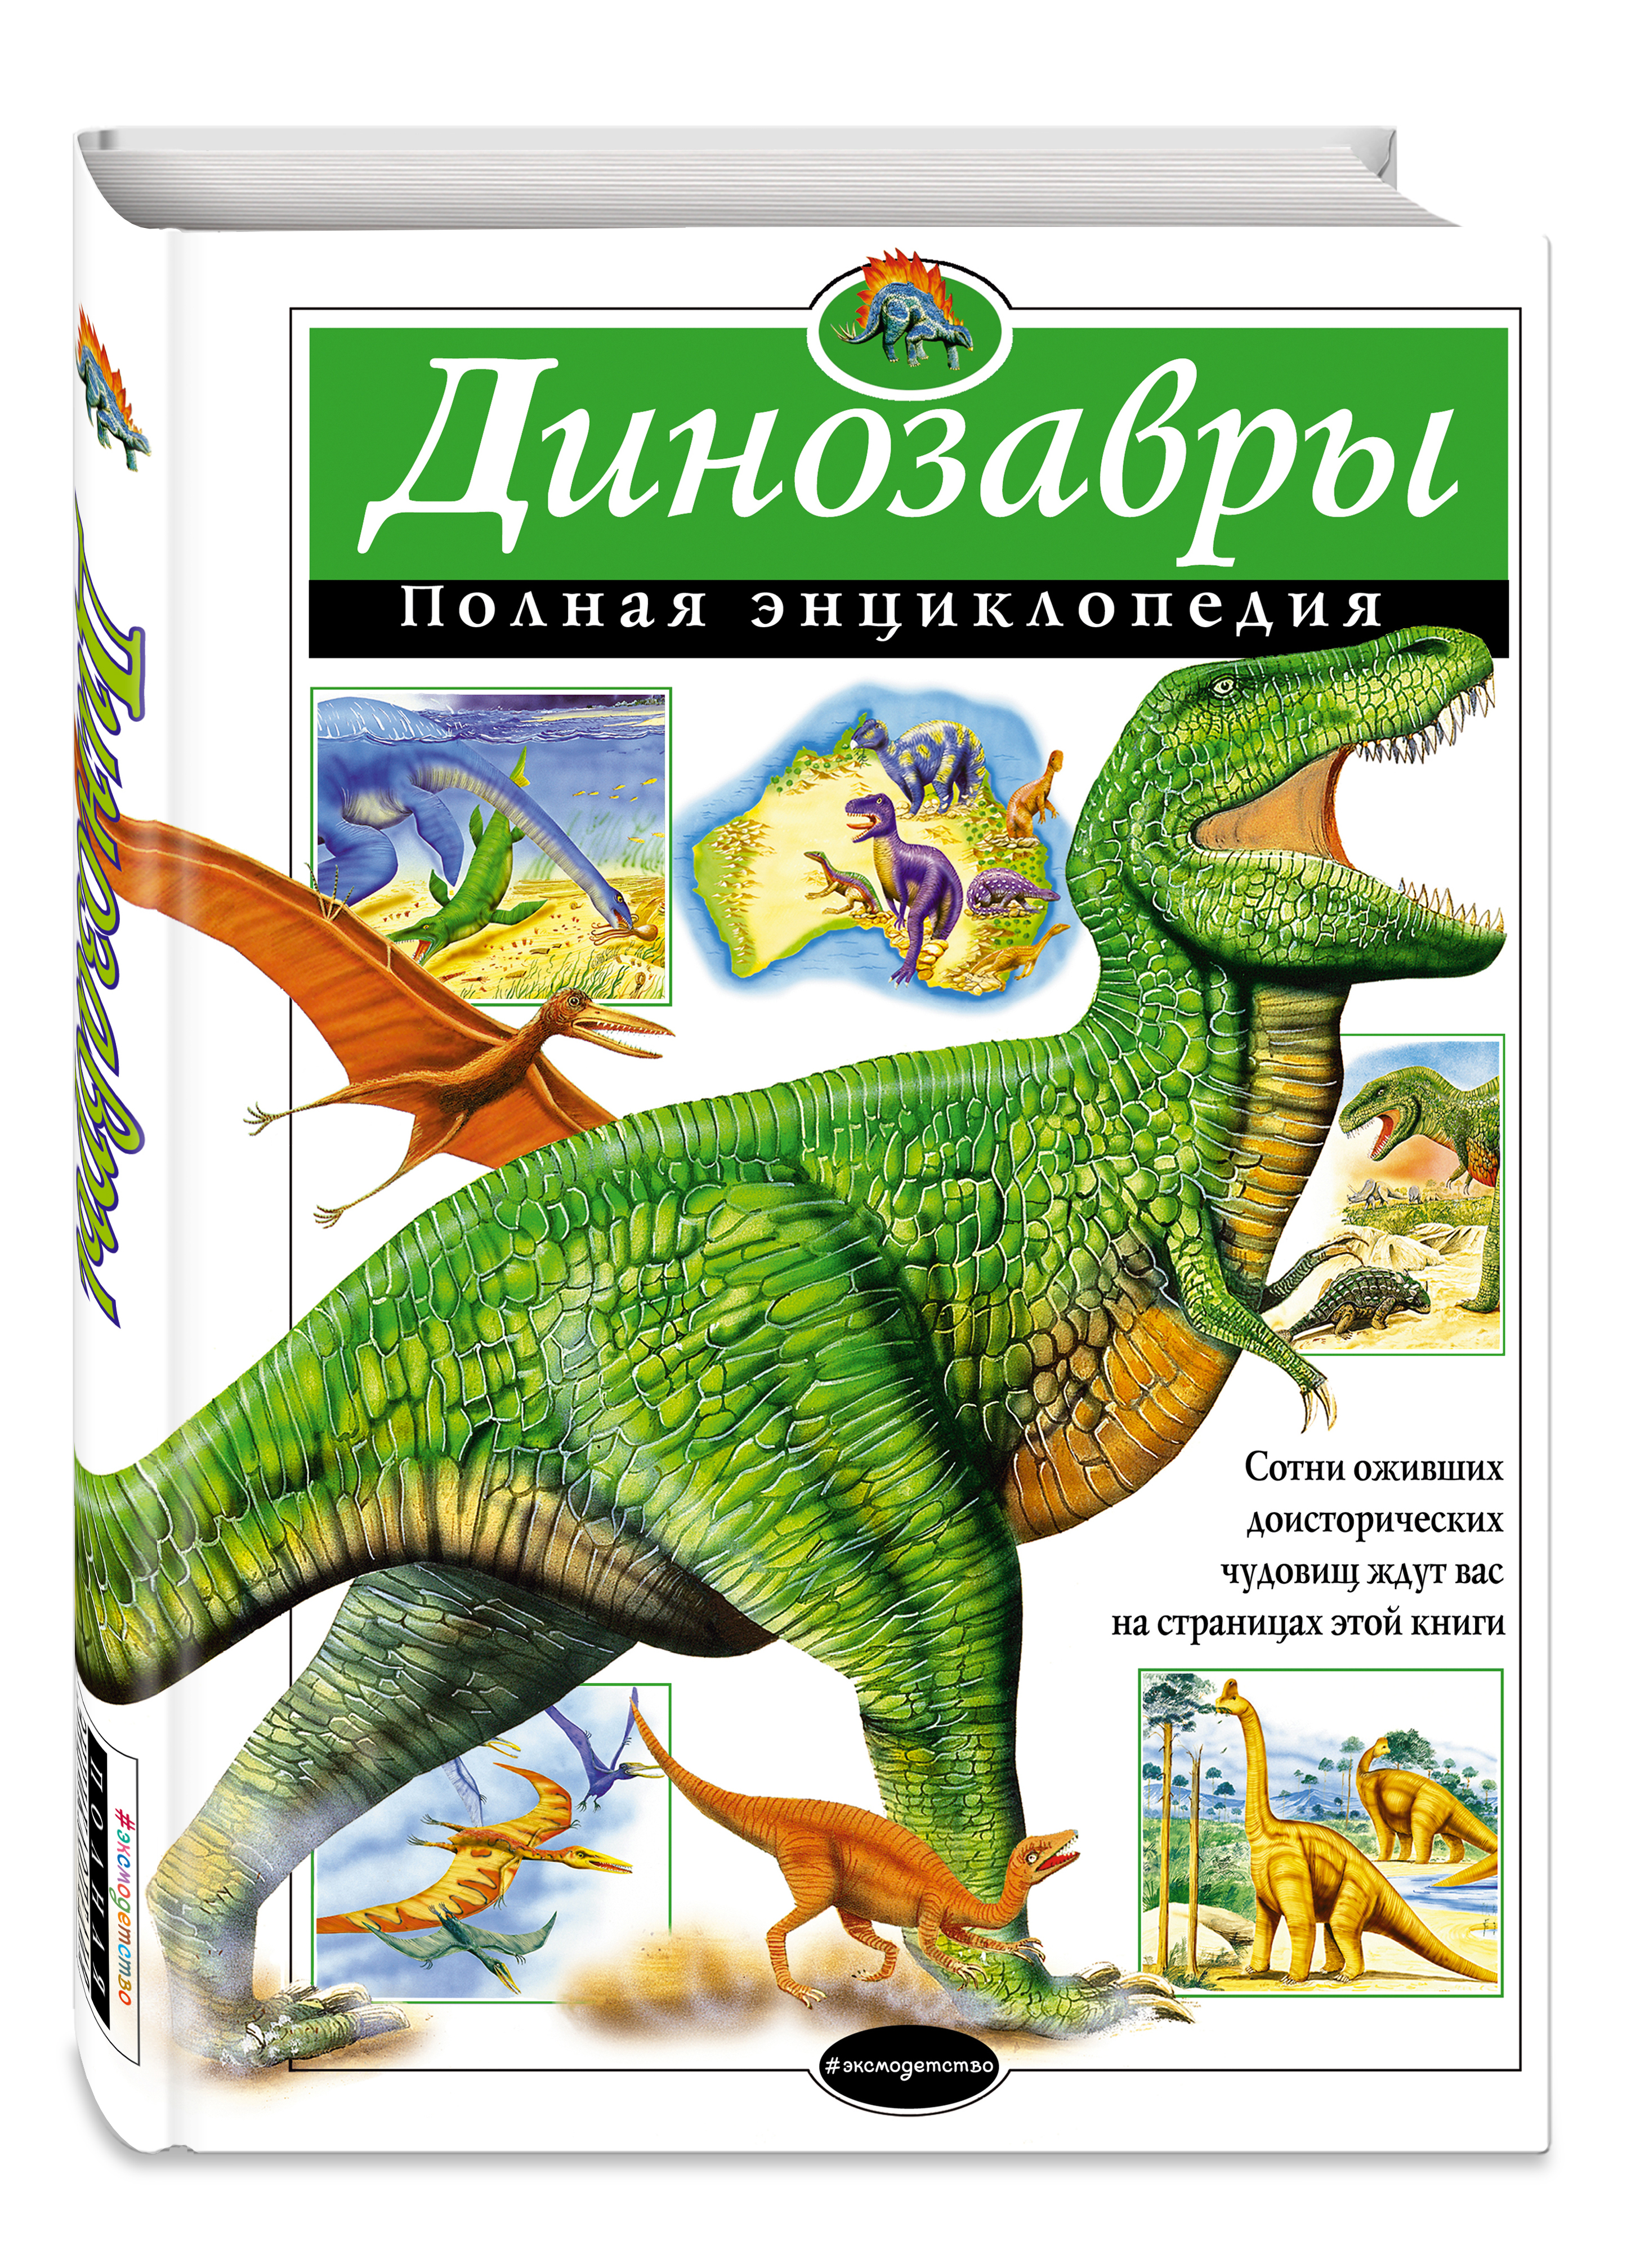 Сочинение Про Динозавров